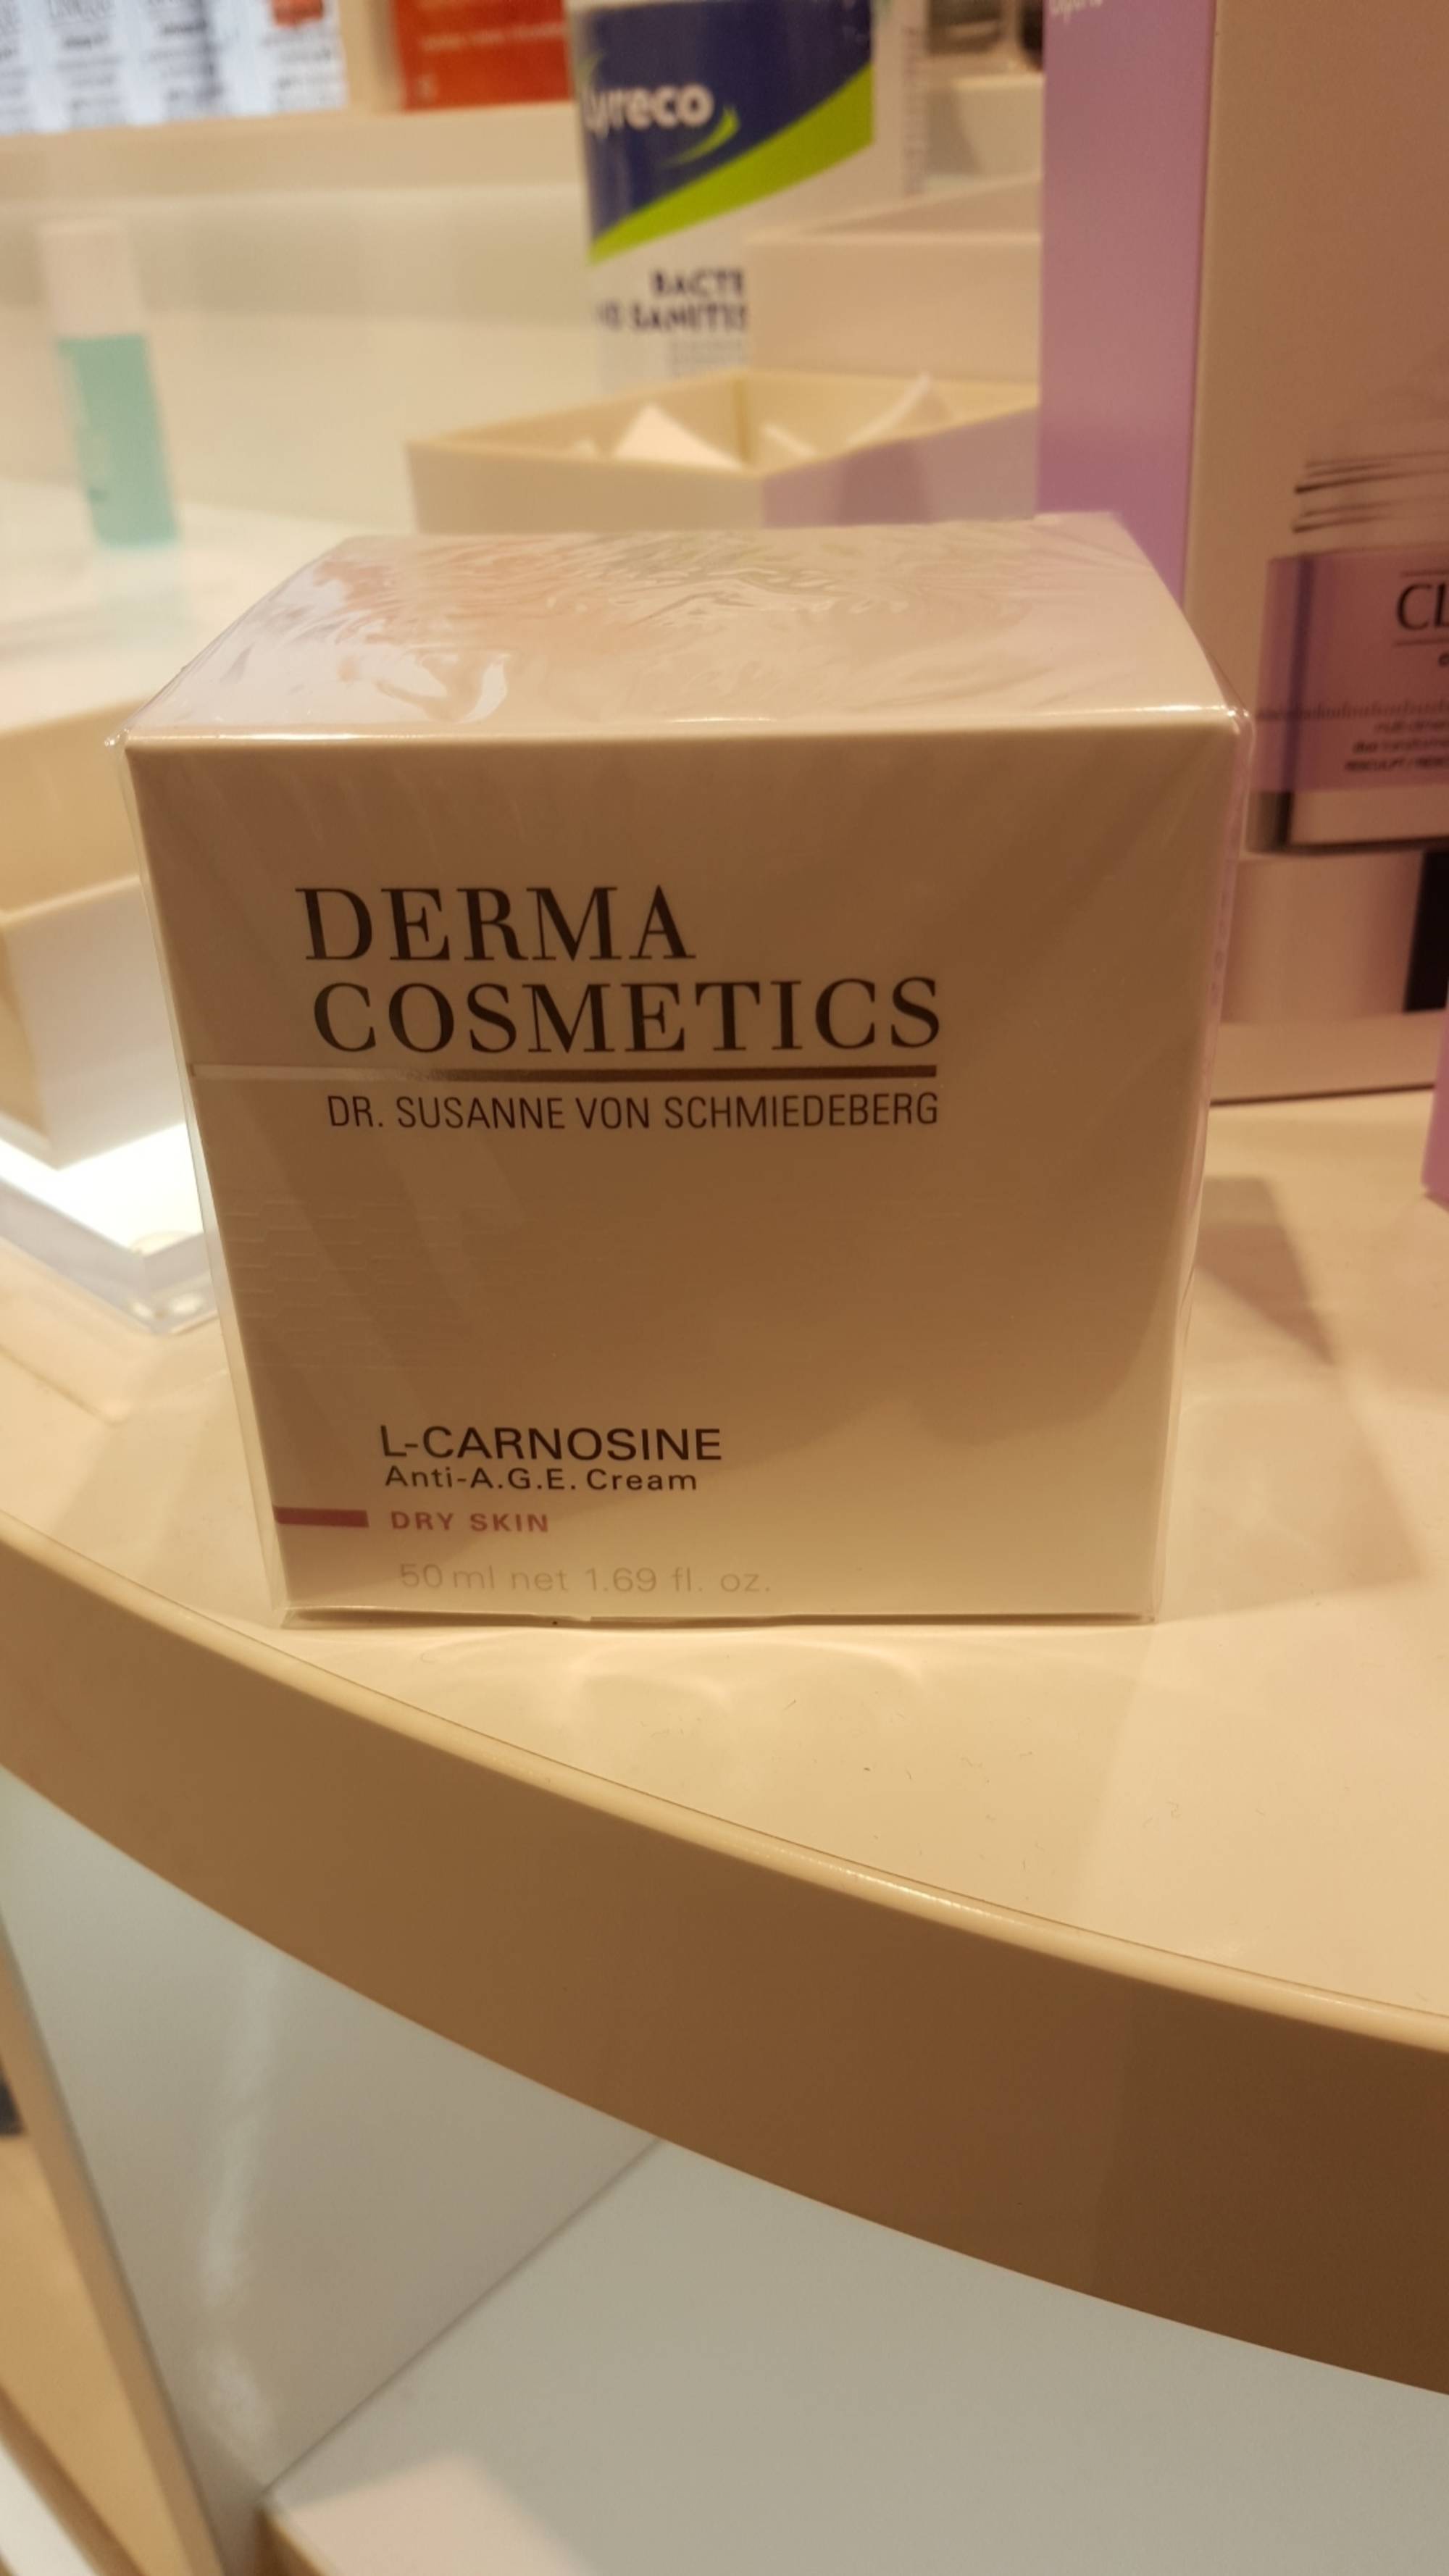 DERMA COSMETICS - L-Carnosine - Anti-age cream dry skin